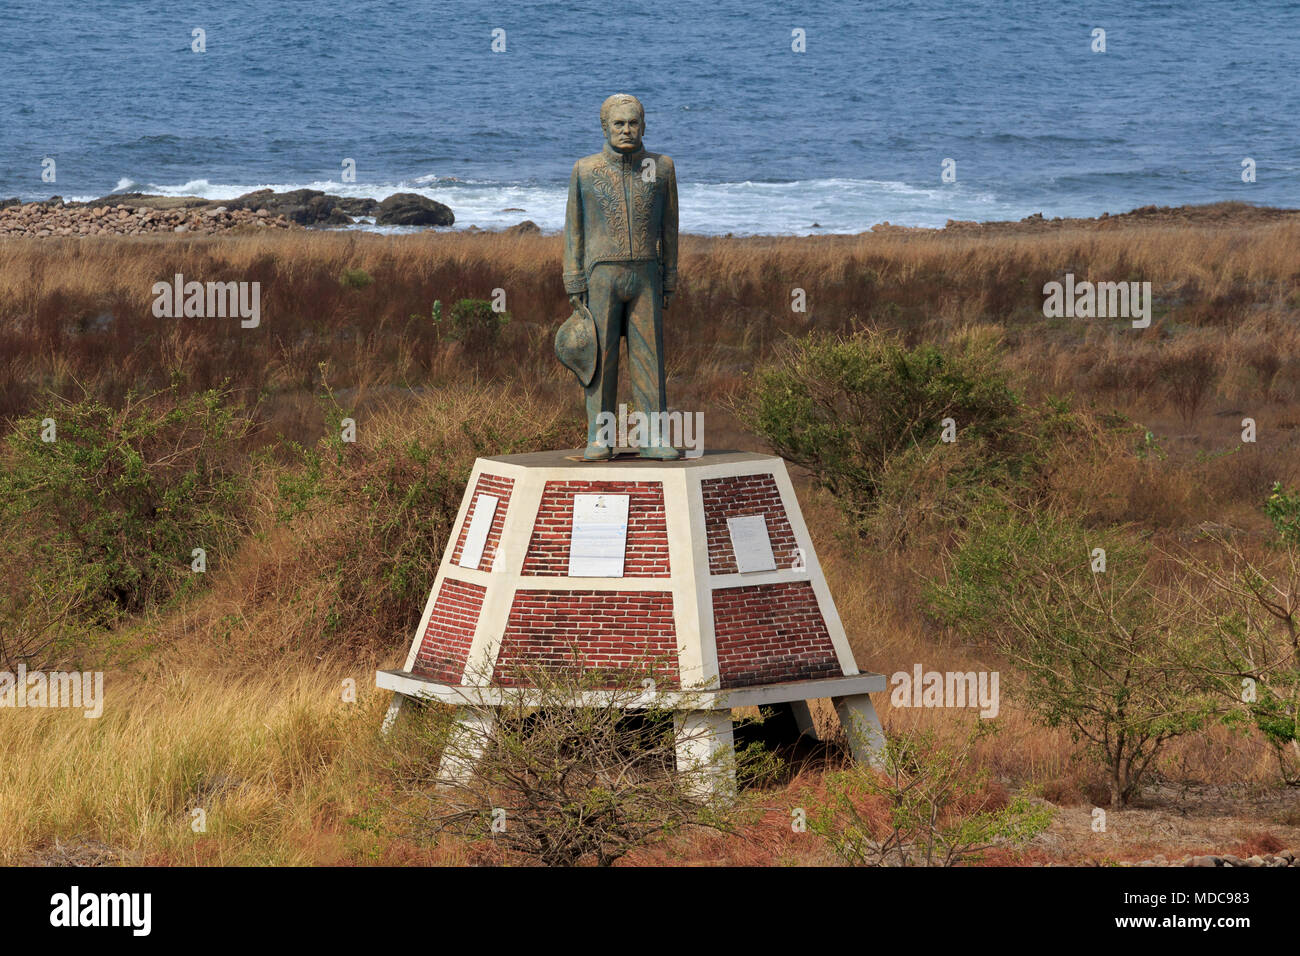 Ruben Dario Monument, El Cardon Island, Corinto, département de Chinandega, au Nicaragua, en Amérique centrale Banque D'Images